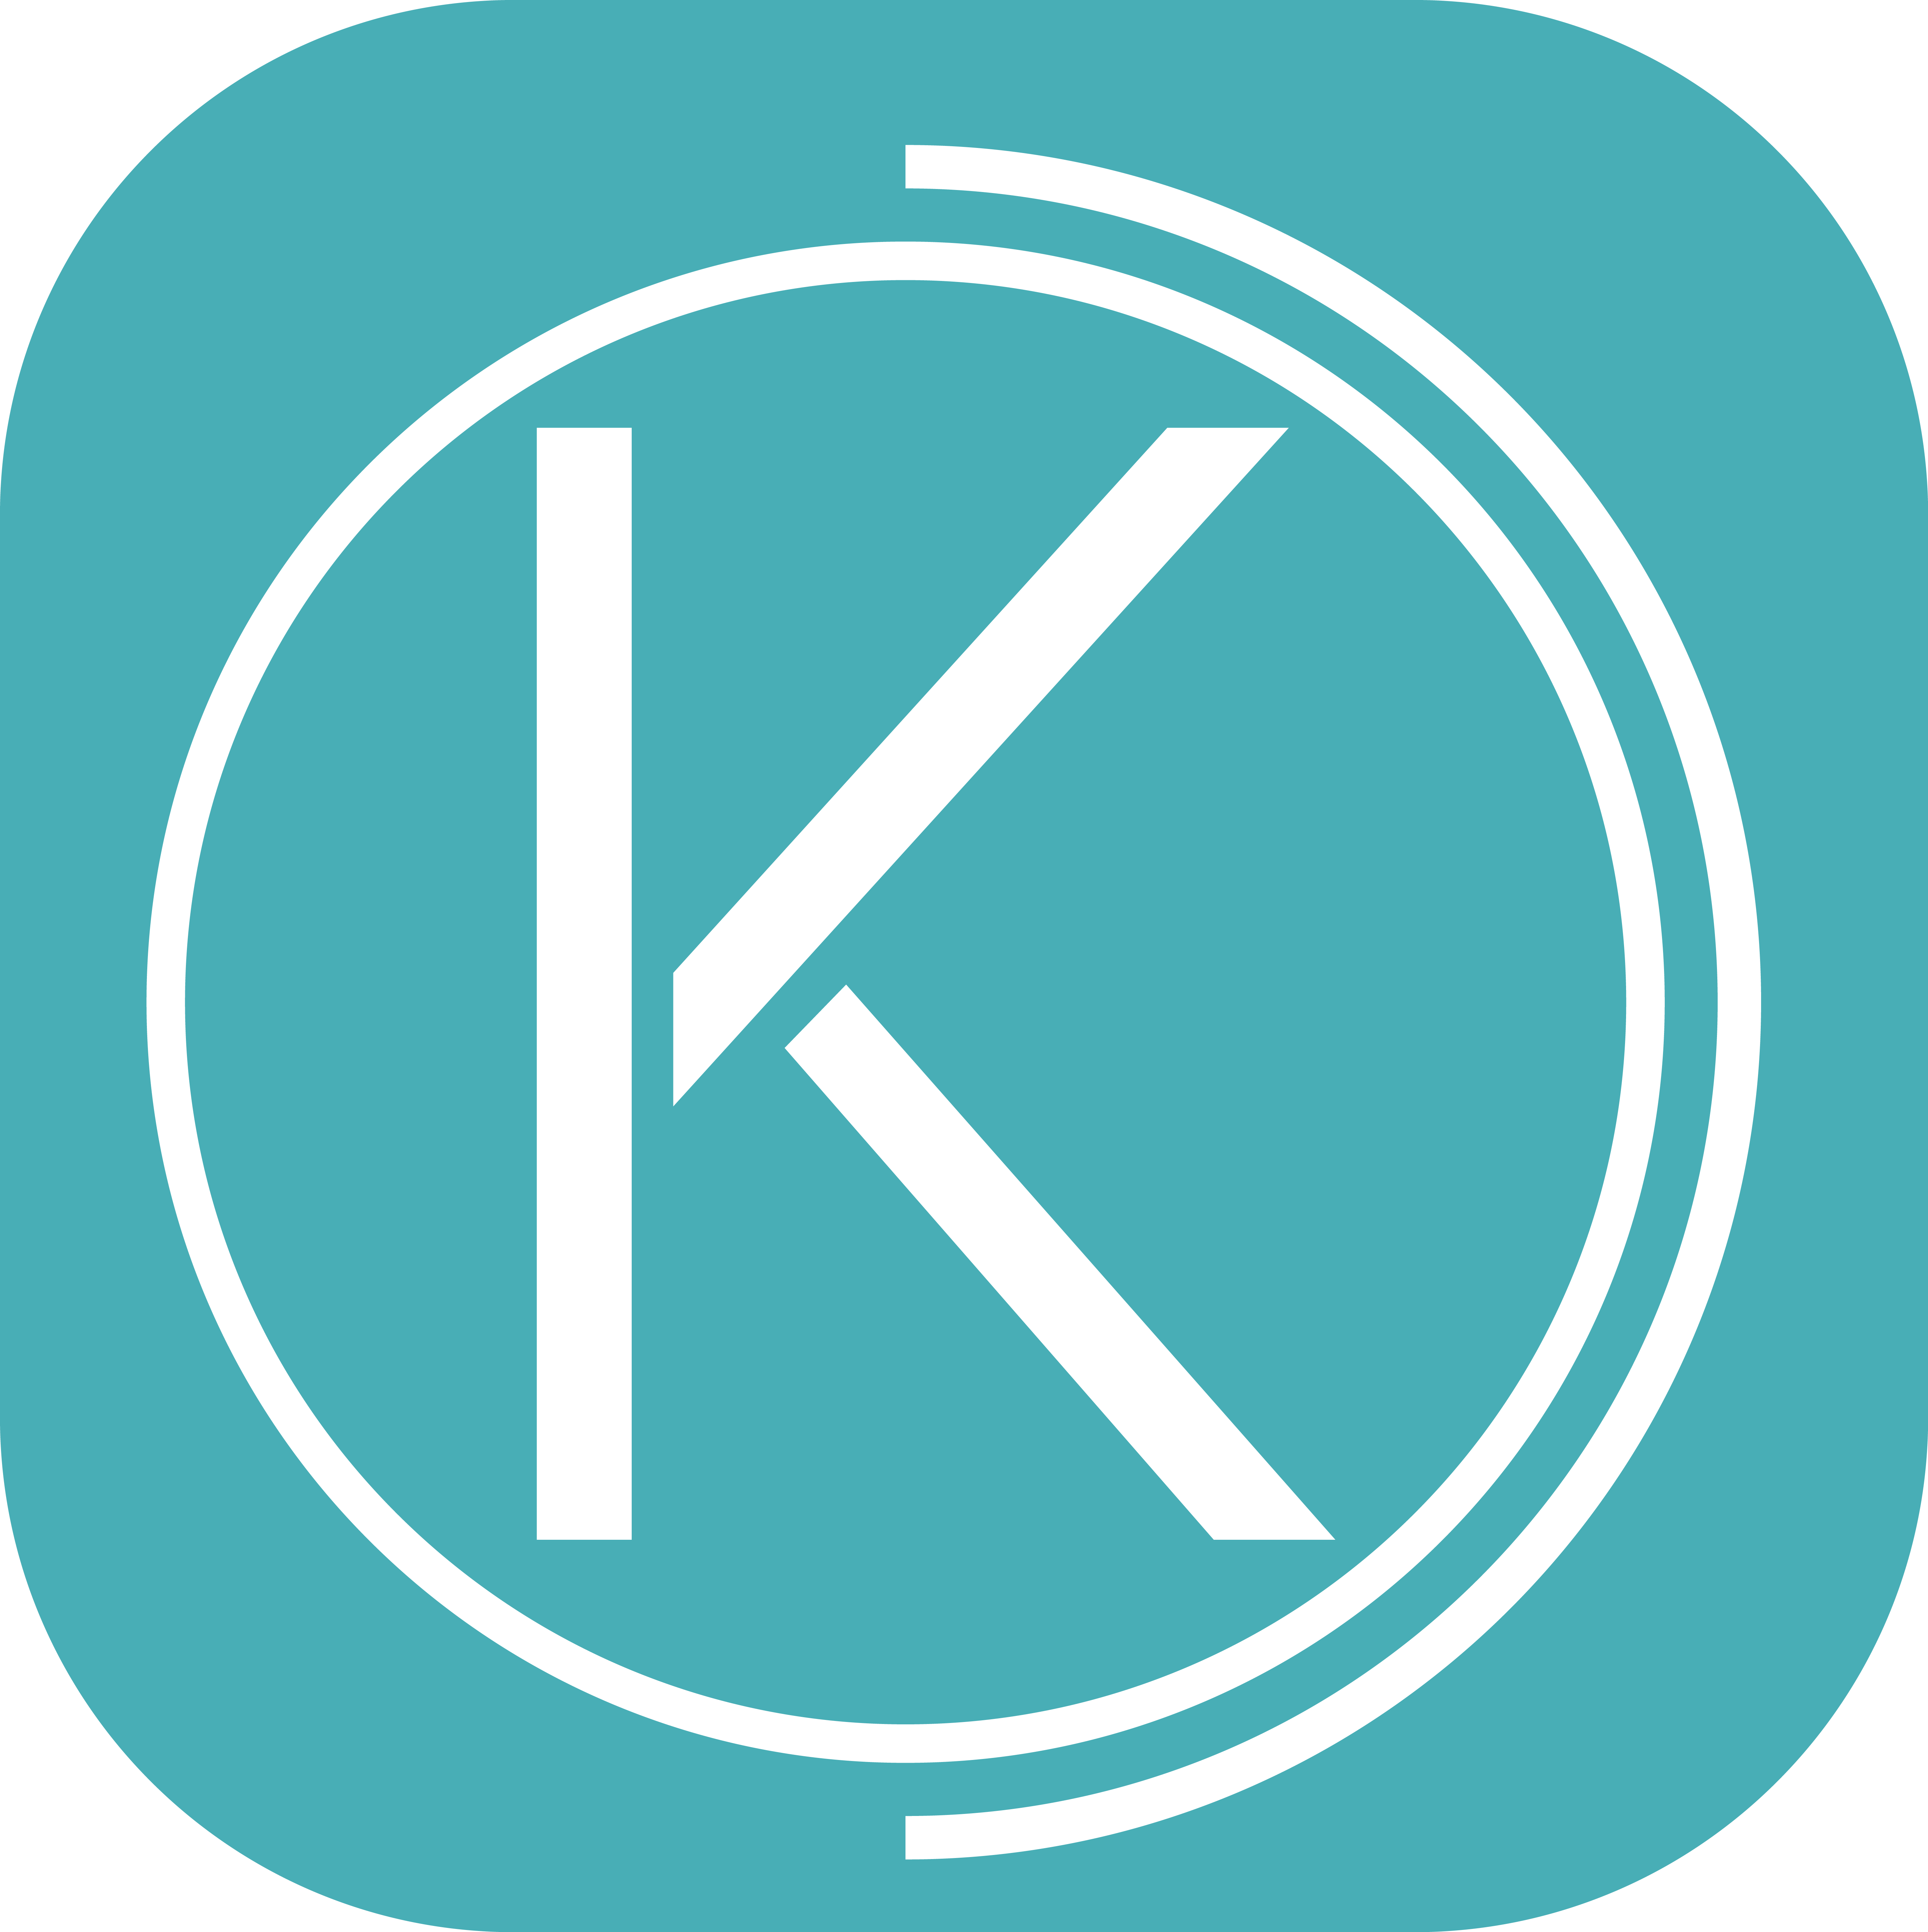 Application Kineapse logo vignette